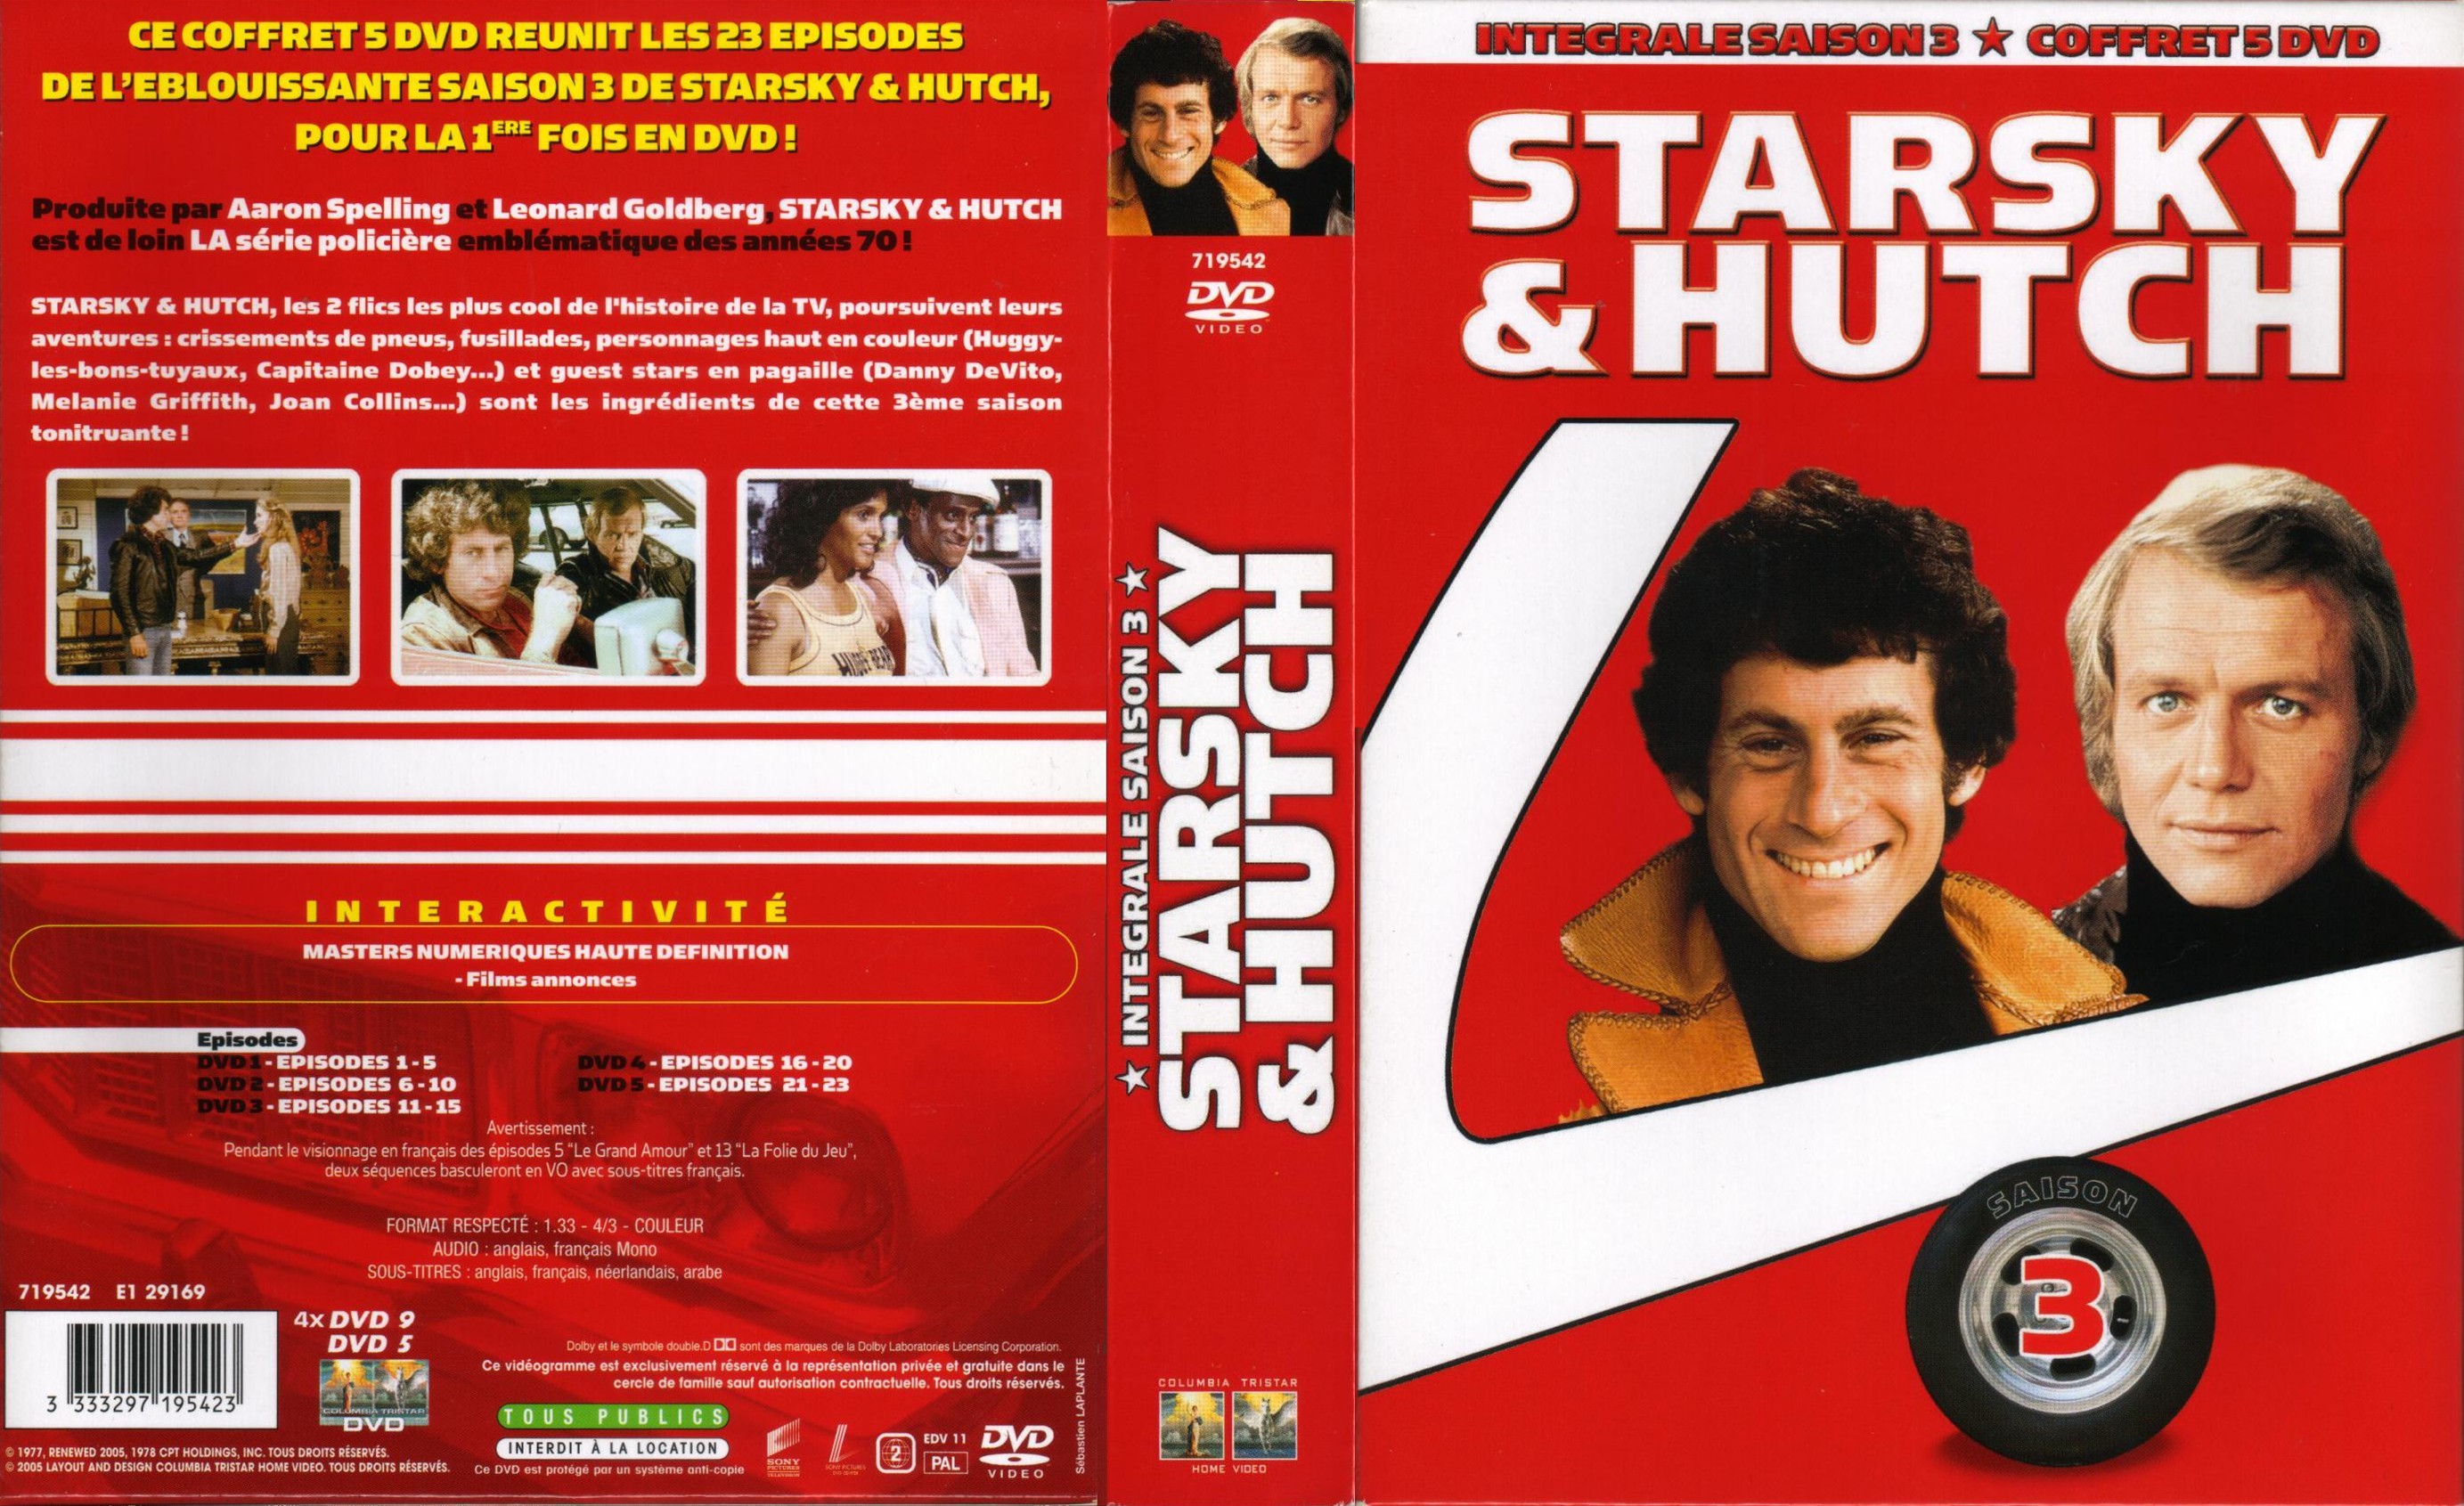 Jaquette DVD Starsky et Hutch saison 3